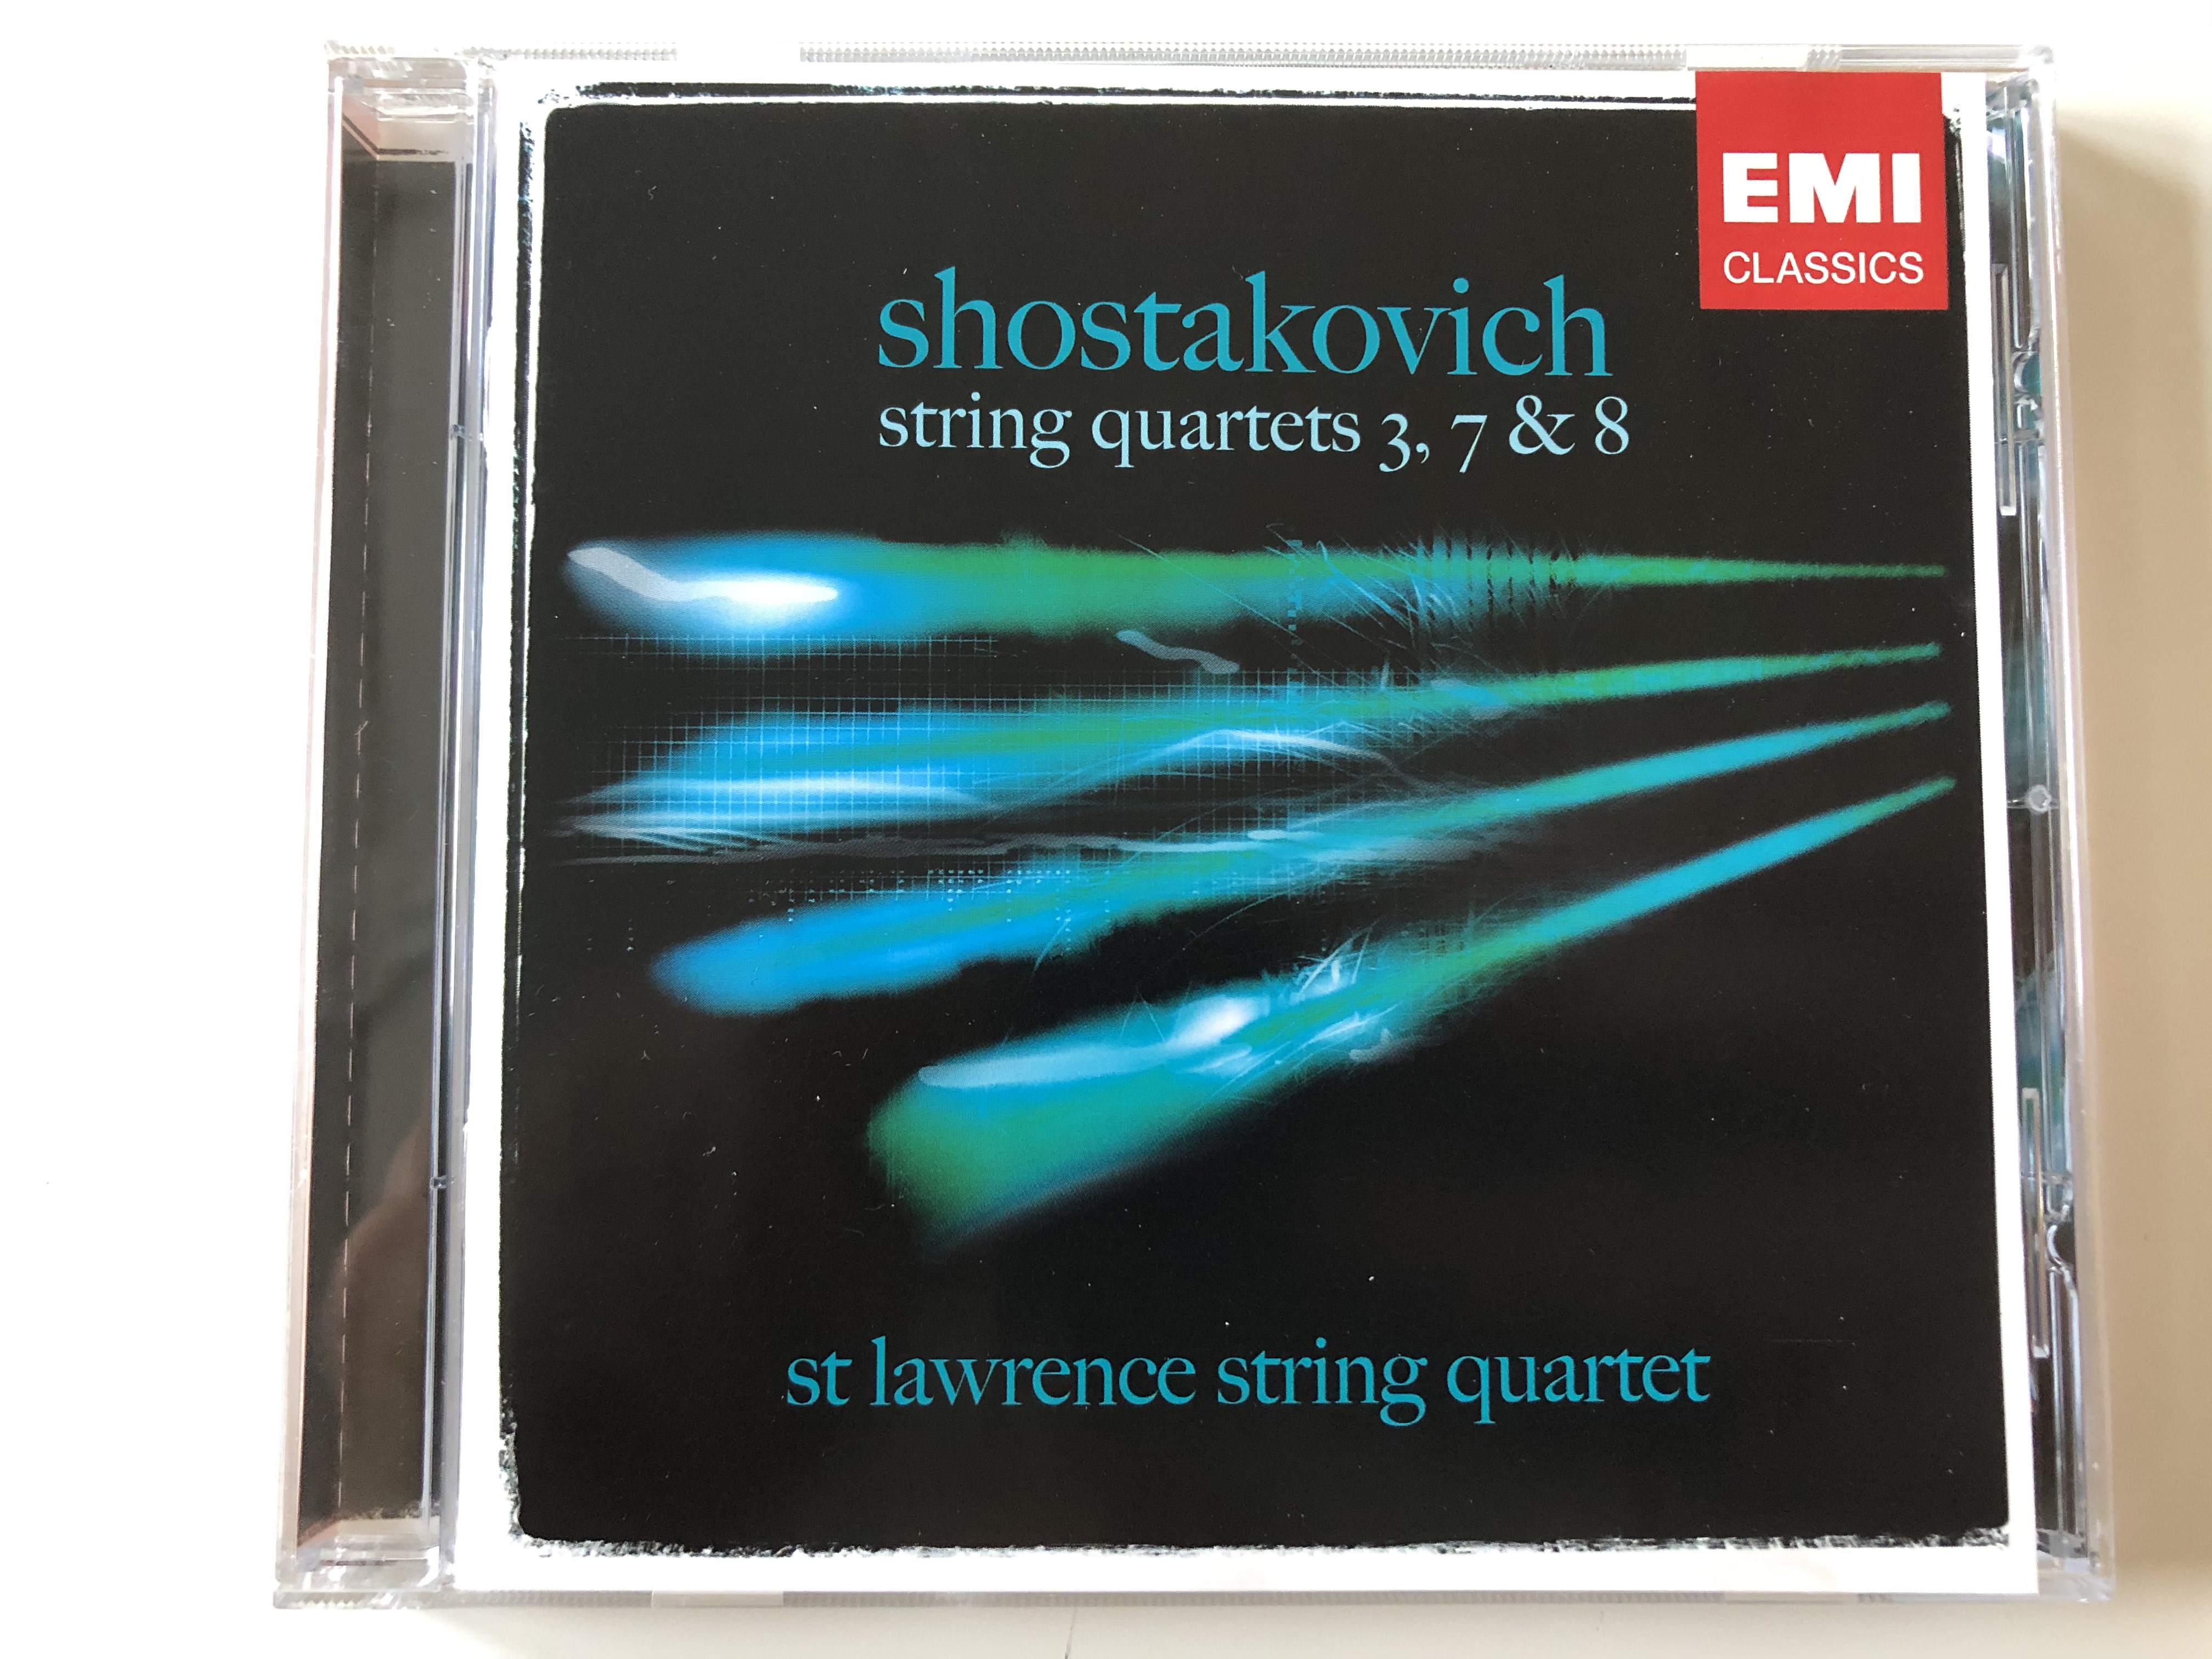 shostakovich-string-quartets-3-7-8-st-lawrence-string-quartet-audio-cd-2006-stereo-3-59956-2-1-.jpg